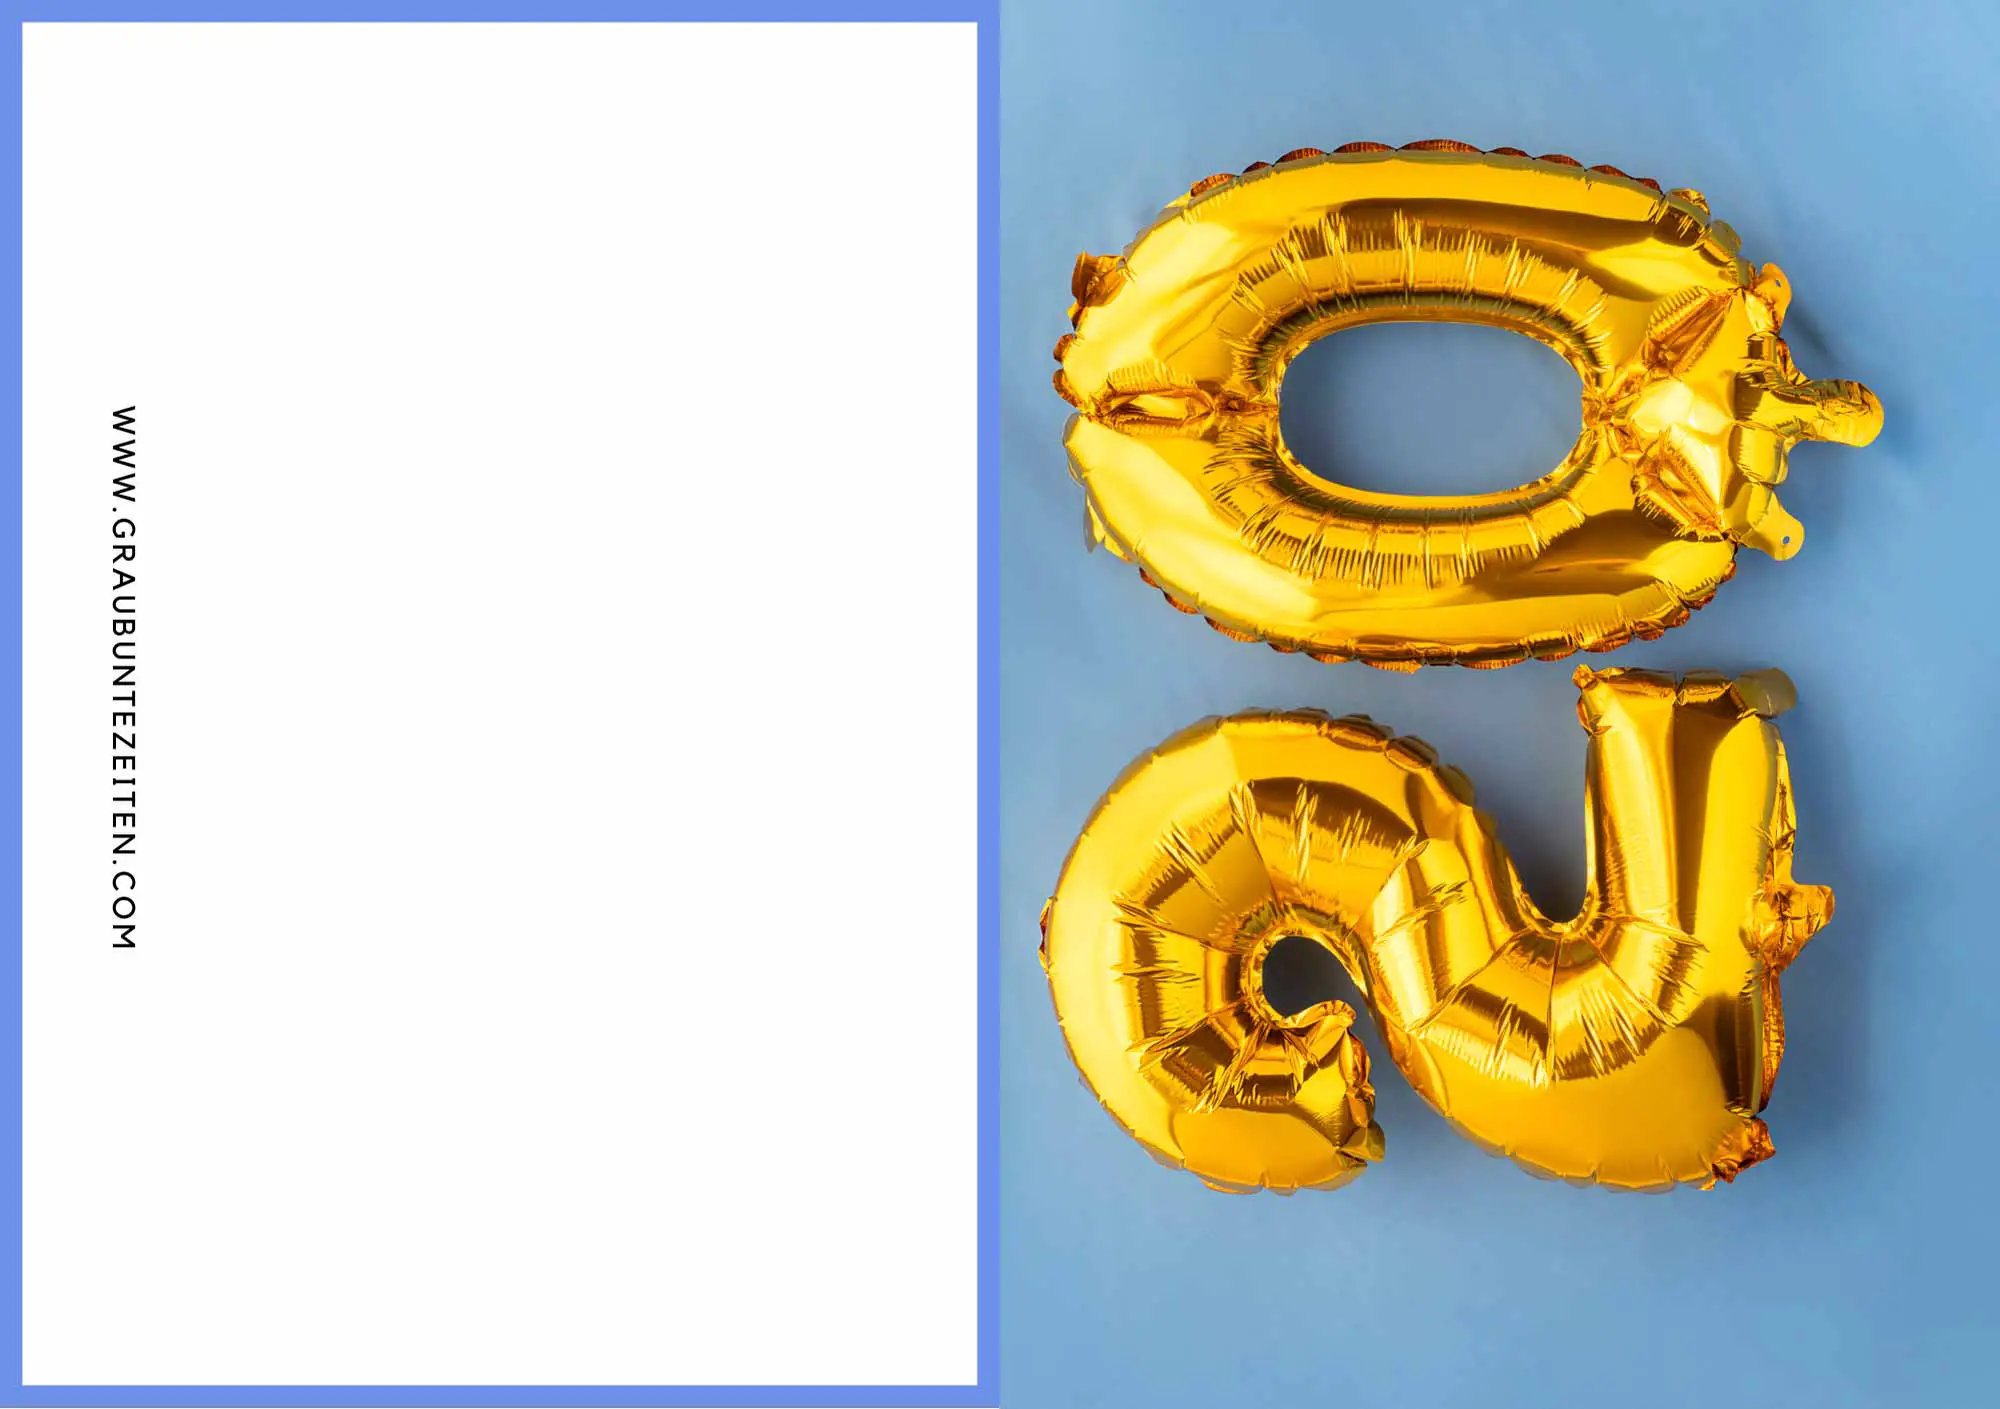 Hier sehen sie aus goldenen Luftballons gebildet die Zahl 20. Sie befindet sich auf einem hellblauen Untergrund.